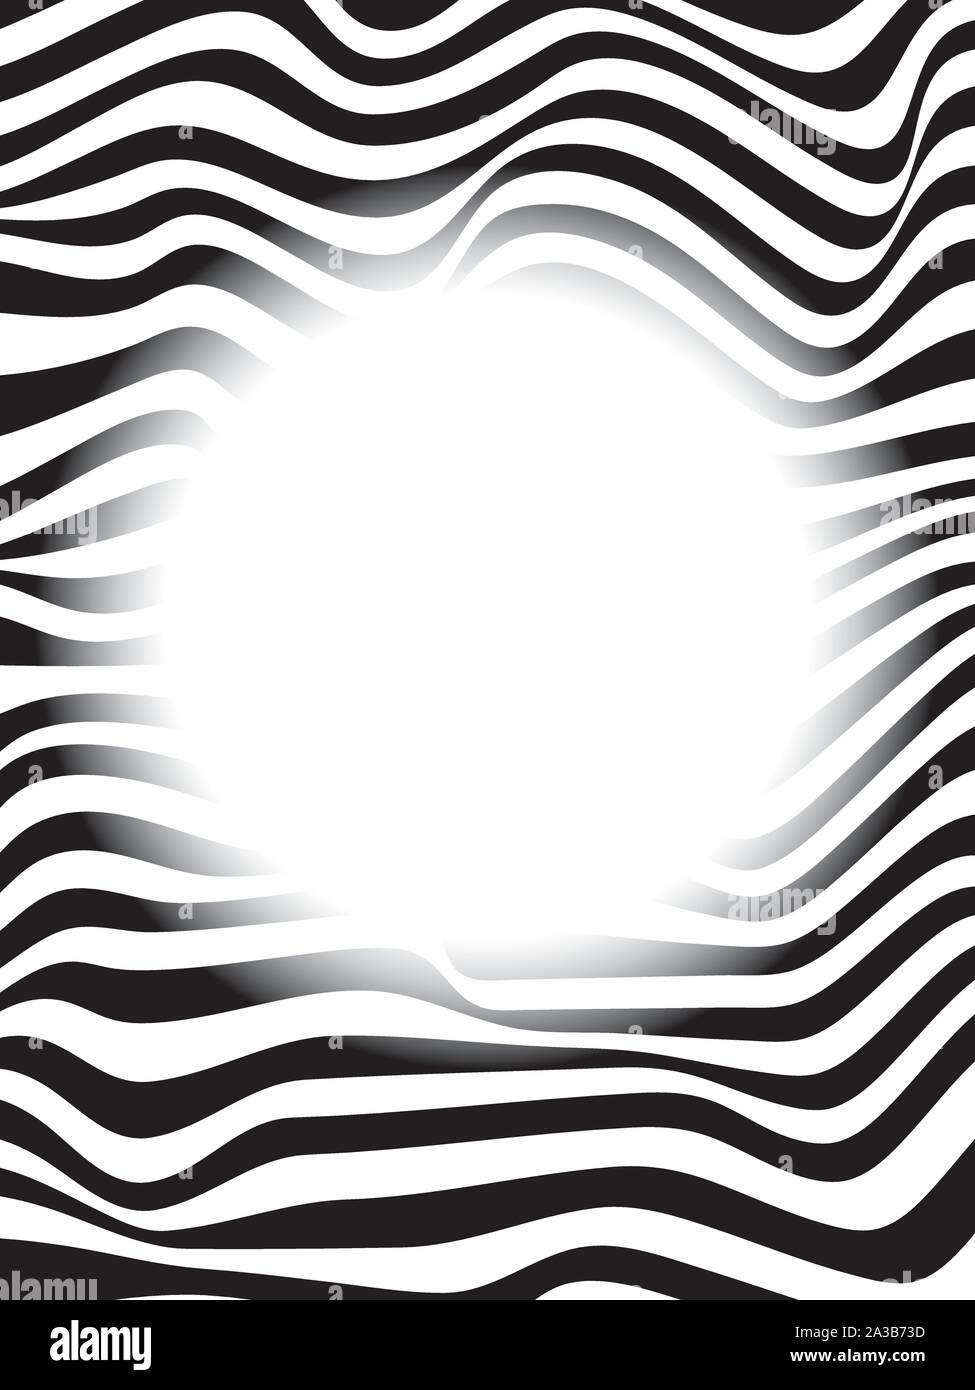 Abstrakte op-art Hintergrund, optische Illusion Zebrafell Muster mit weichen kreisrunden transparenten Kopie Raum Stock Vektor